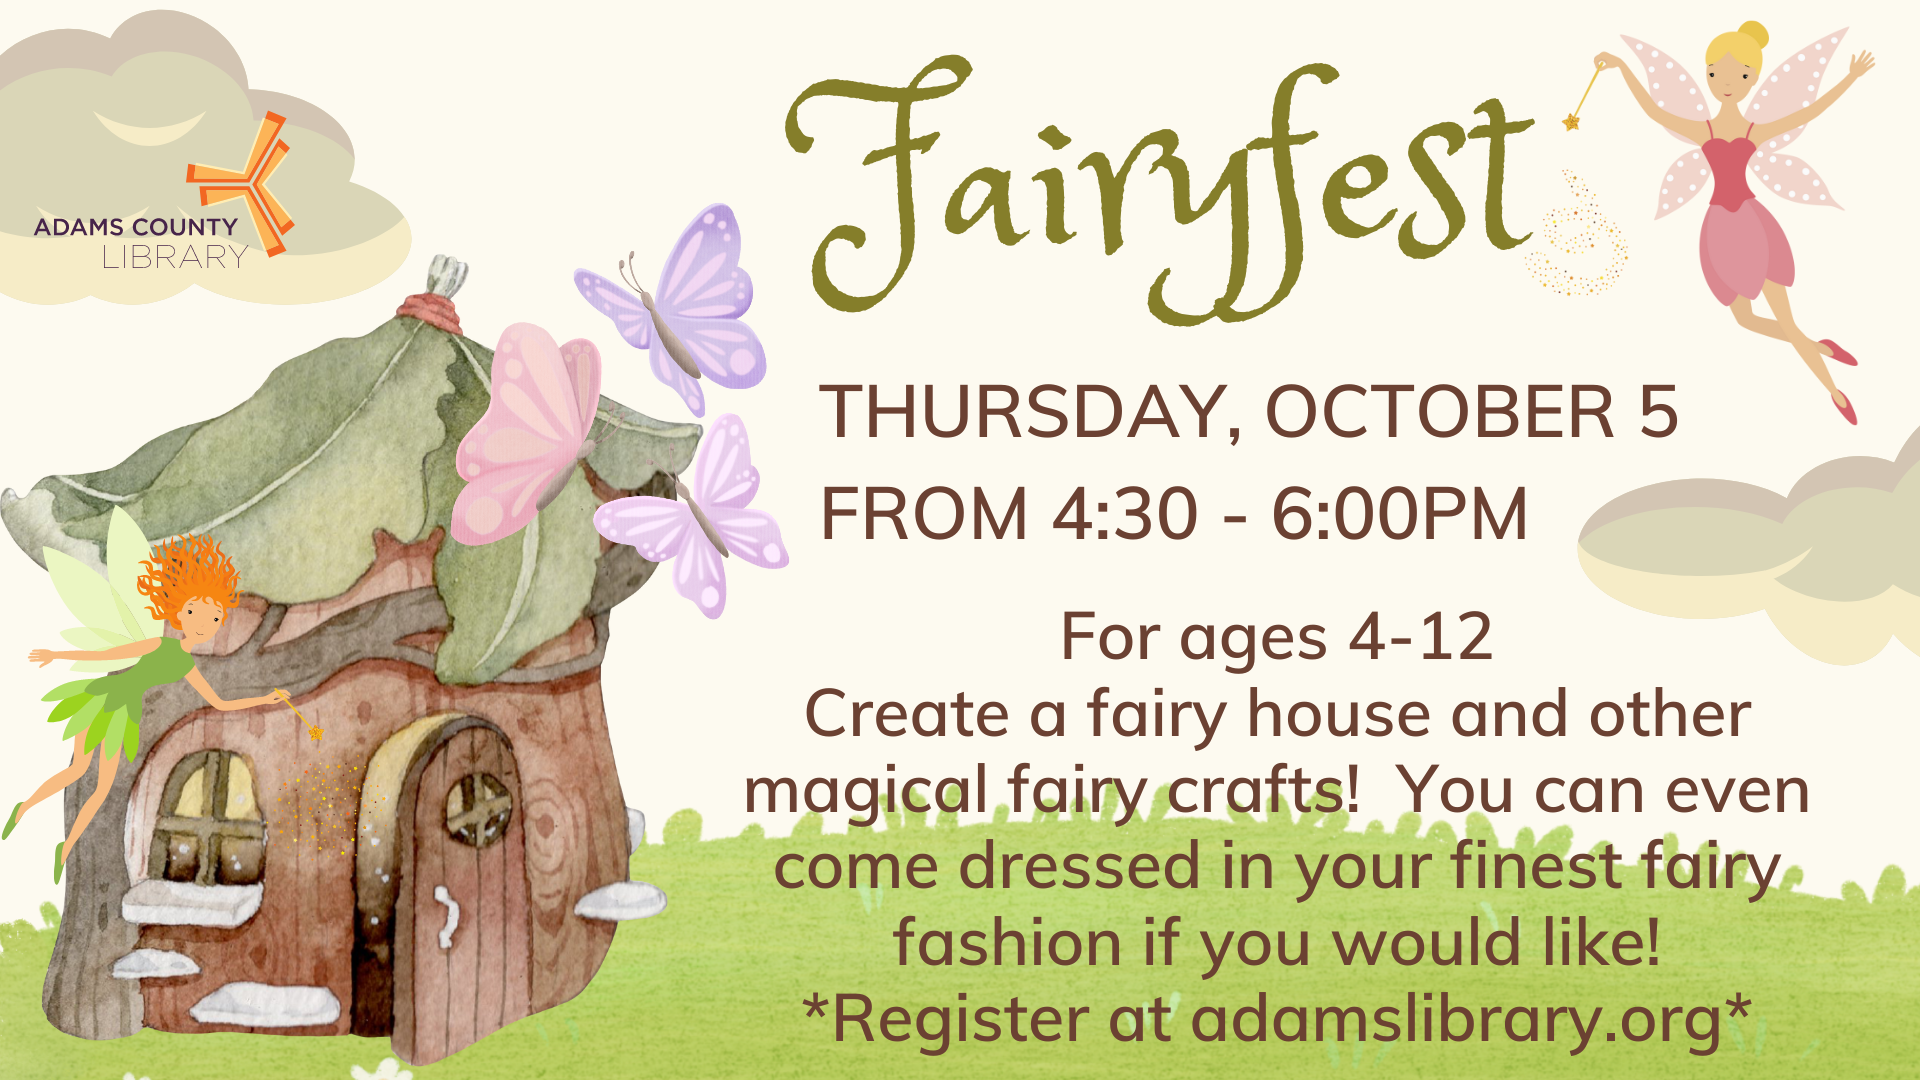 Fairyfest THURSDAY, OCTOBER 5 FROM 4:30 - 6:00PM